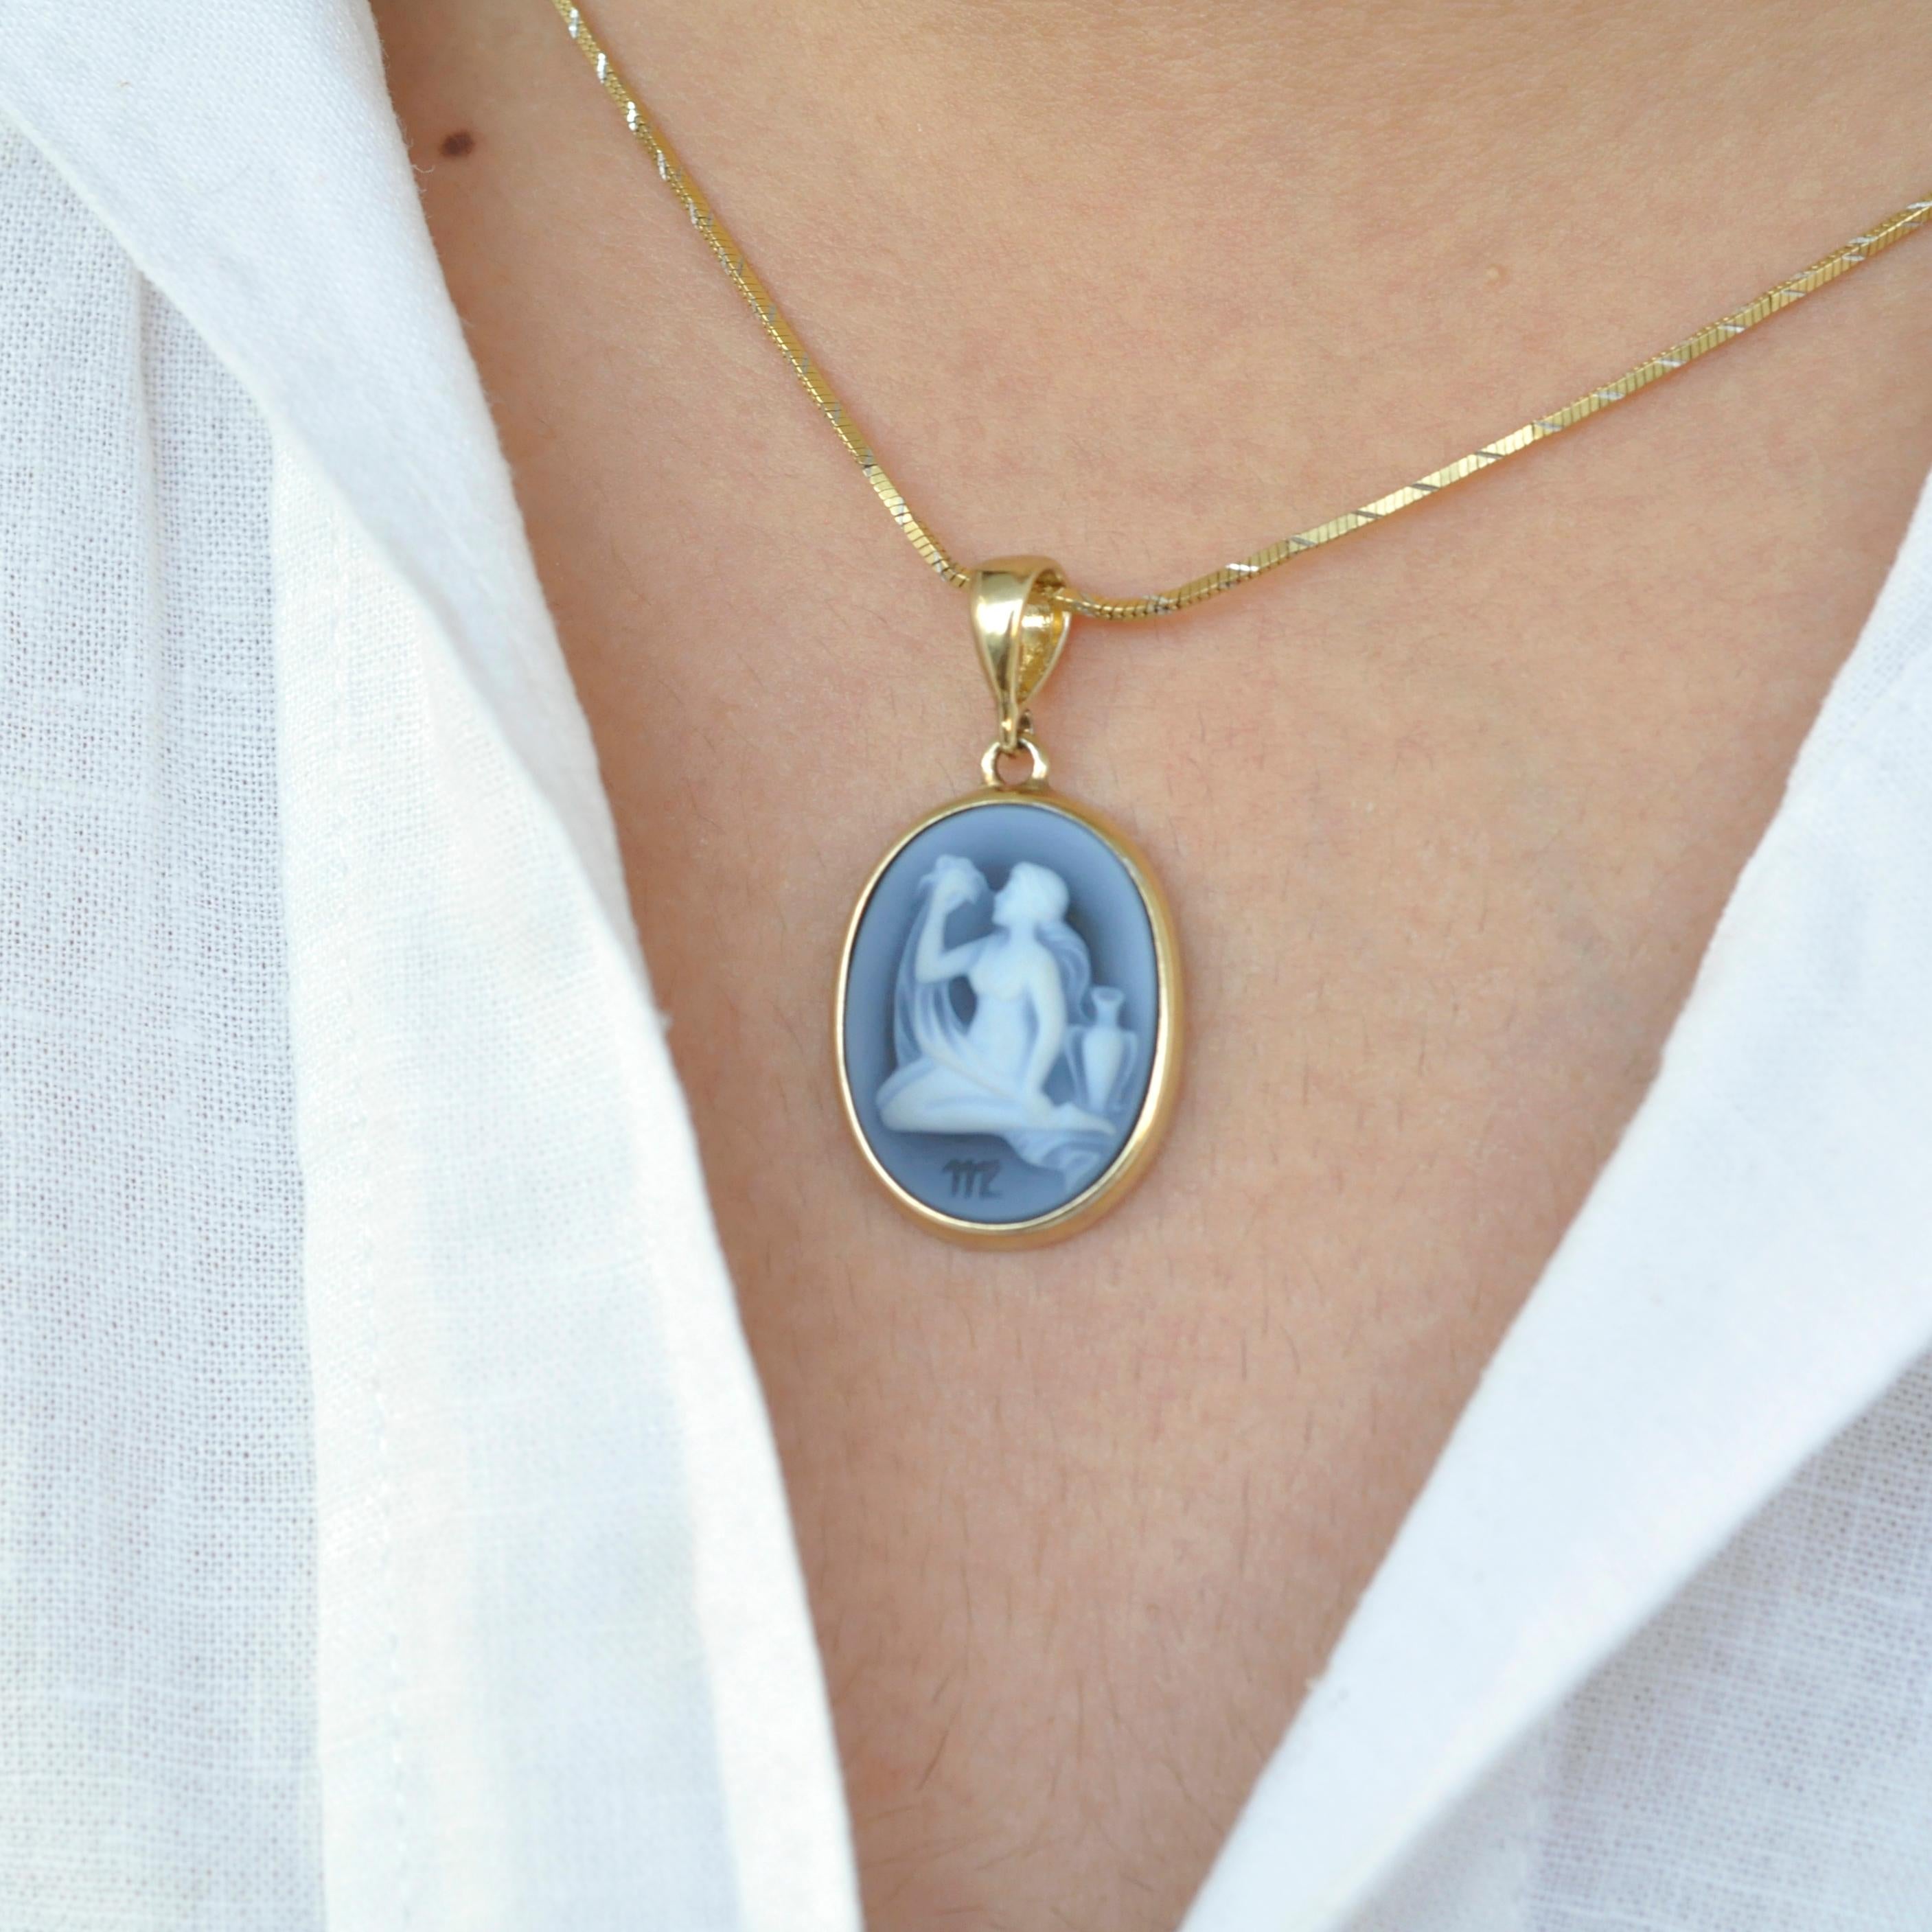 Voici notre exquis collier à pendentif camée sculpté en forme de Vierge de la Collection Zodiac. Ce collier est orné d'un camée méticuleusement réalisé par un graveur expert en Allemagne. Le camée est habilement gravé sur un relief d'agate 100 %